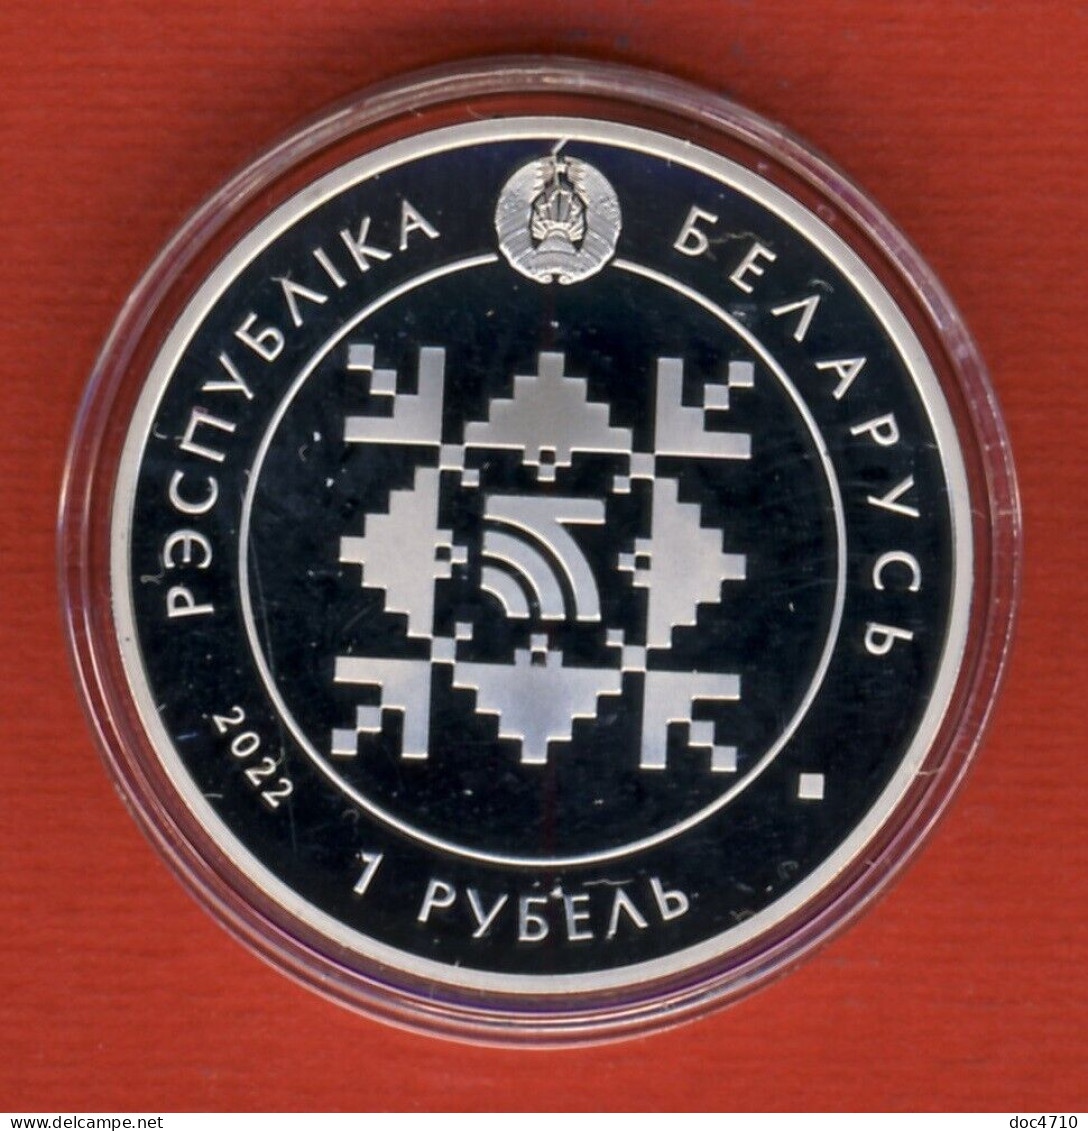 Belarus 1 Ruble 2022, Belarusbank. 100 Years, KM#New, Prooflike - Belarus